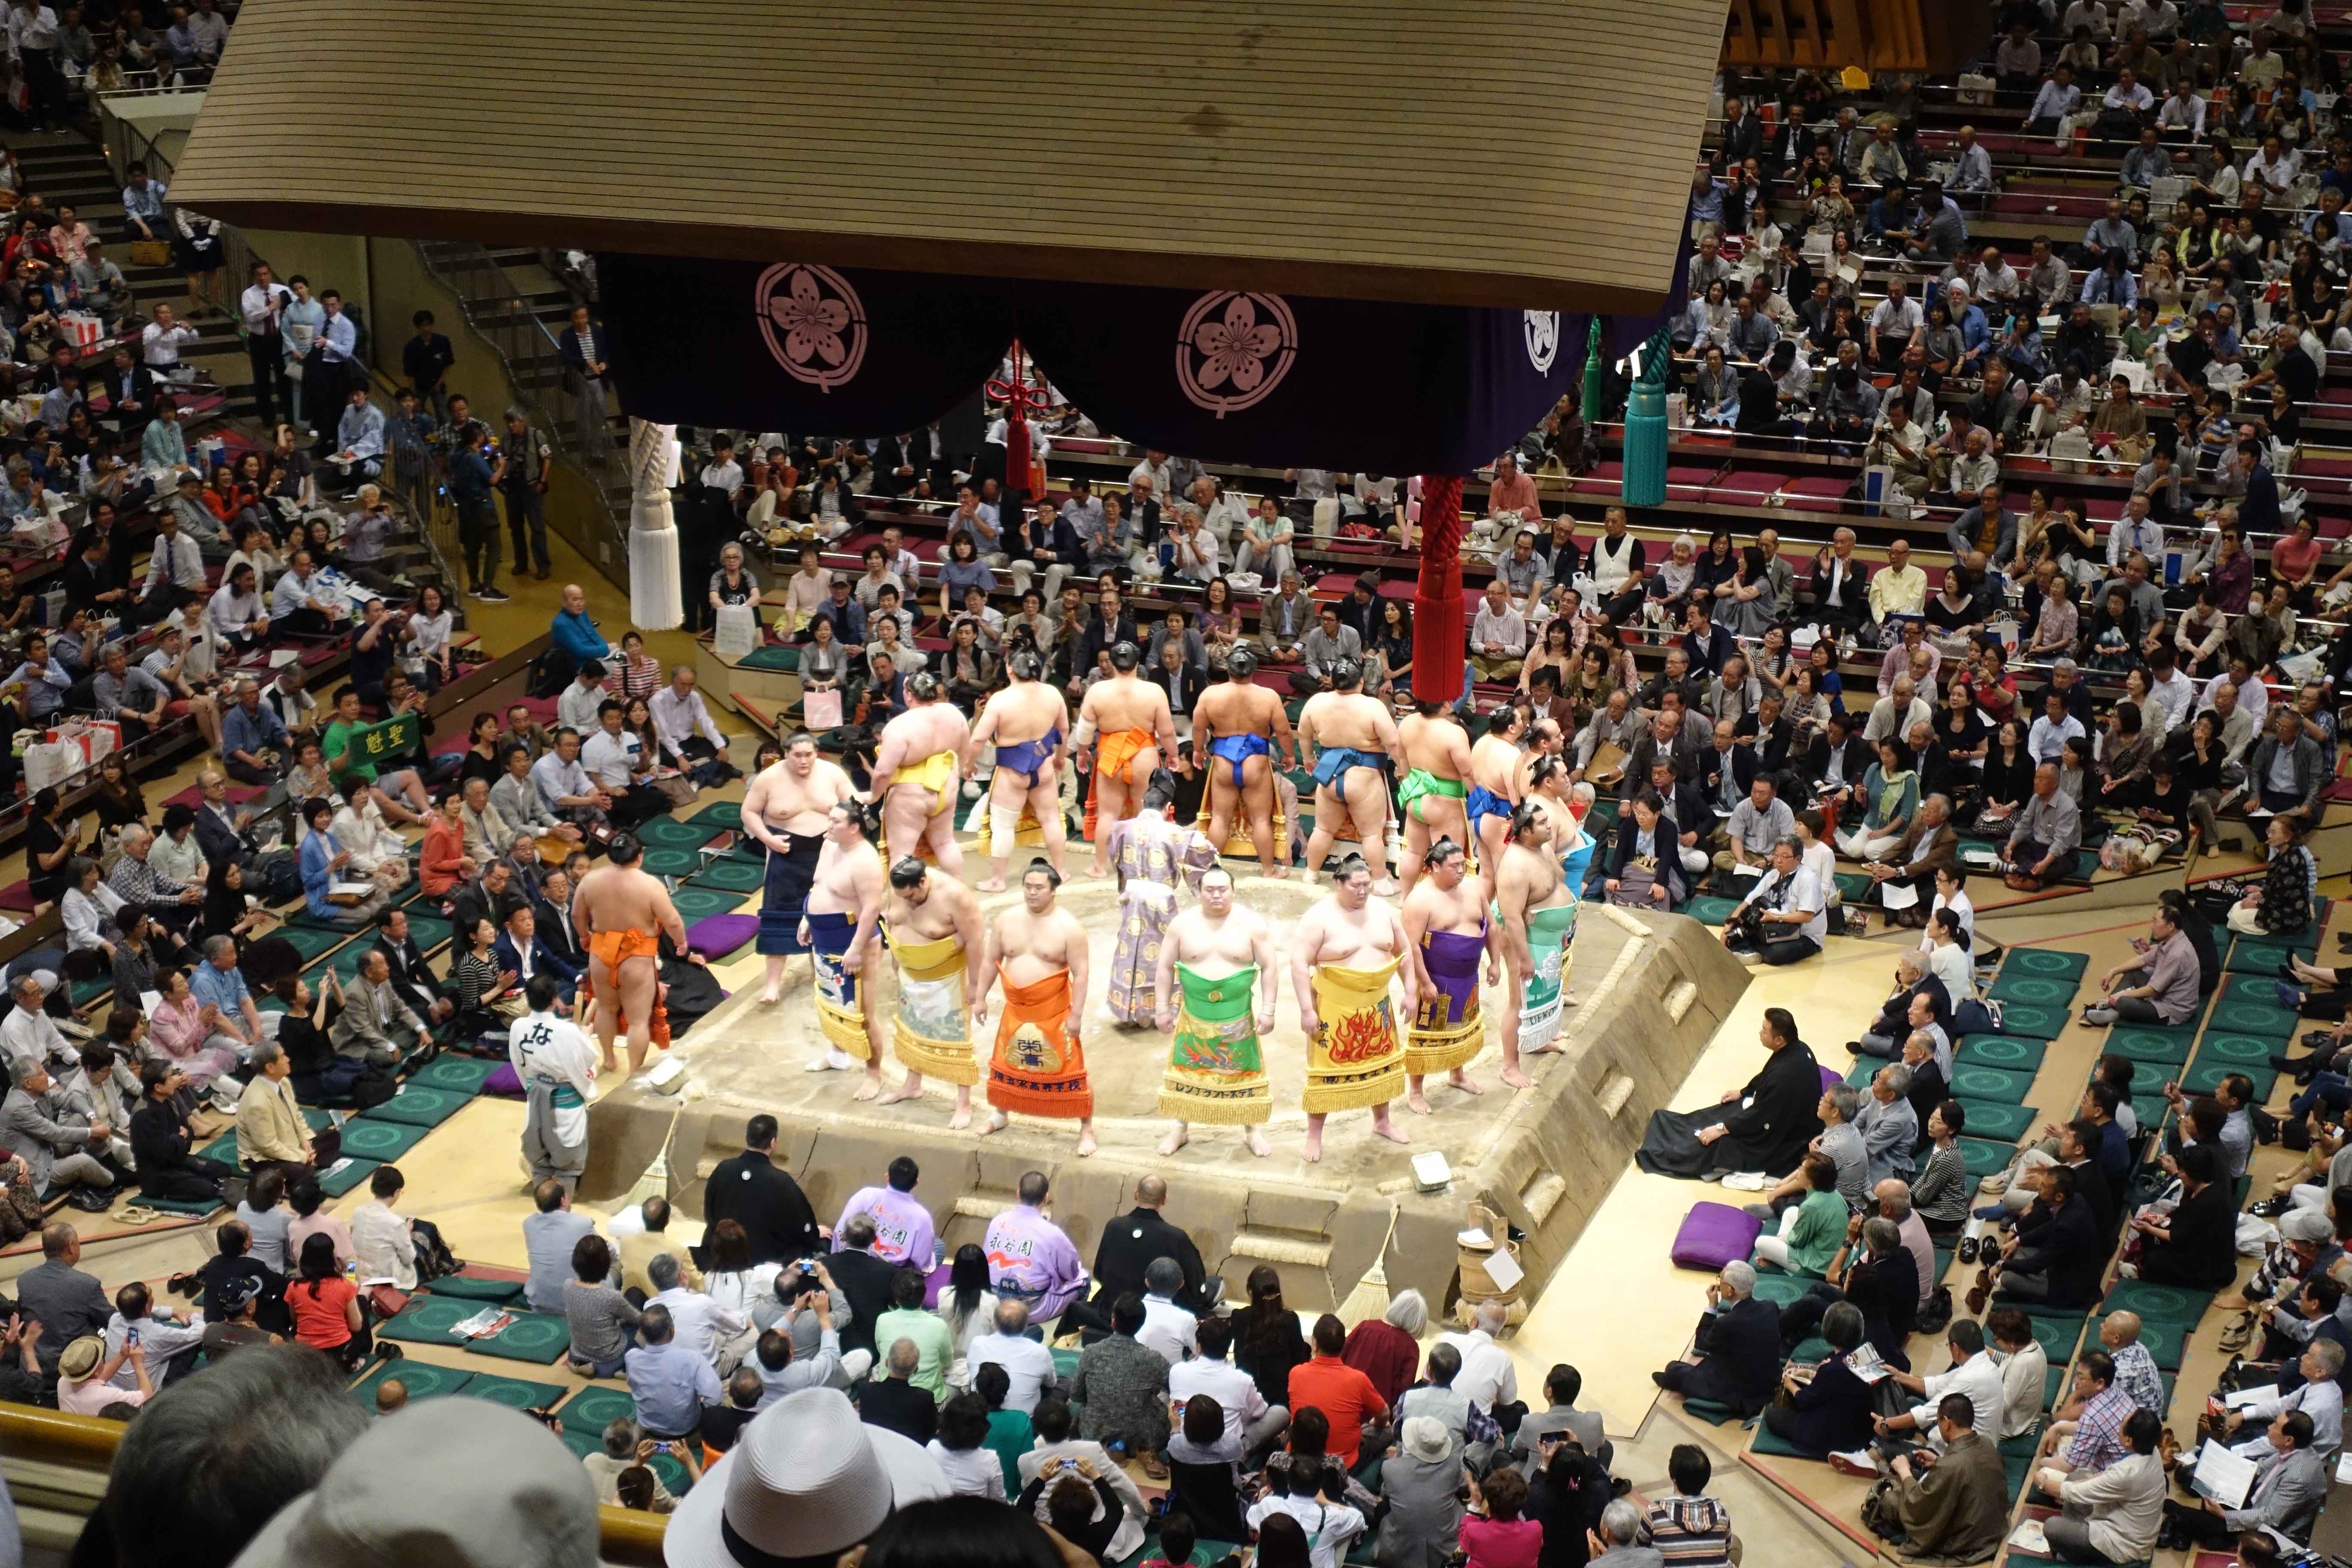 Ryogoku Kokugikan Sumo Tournament